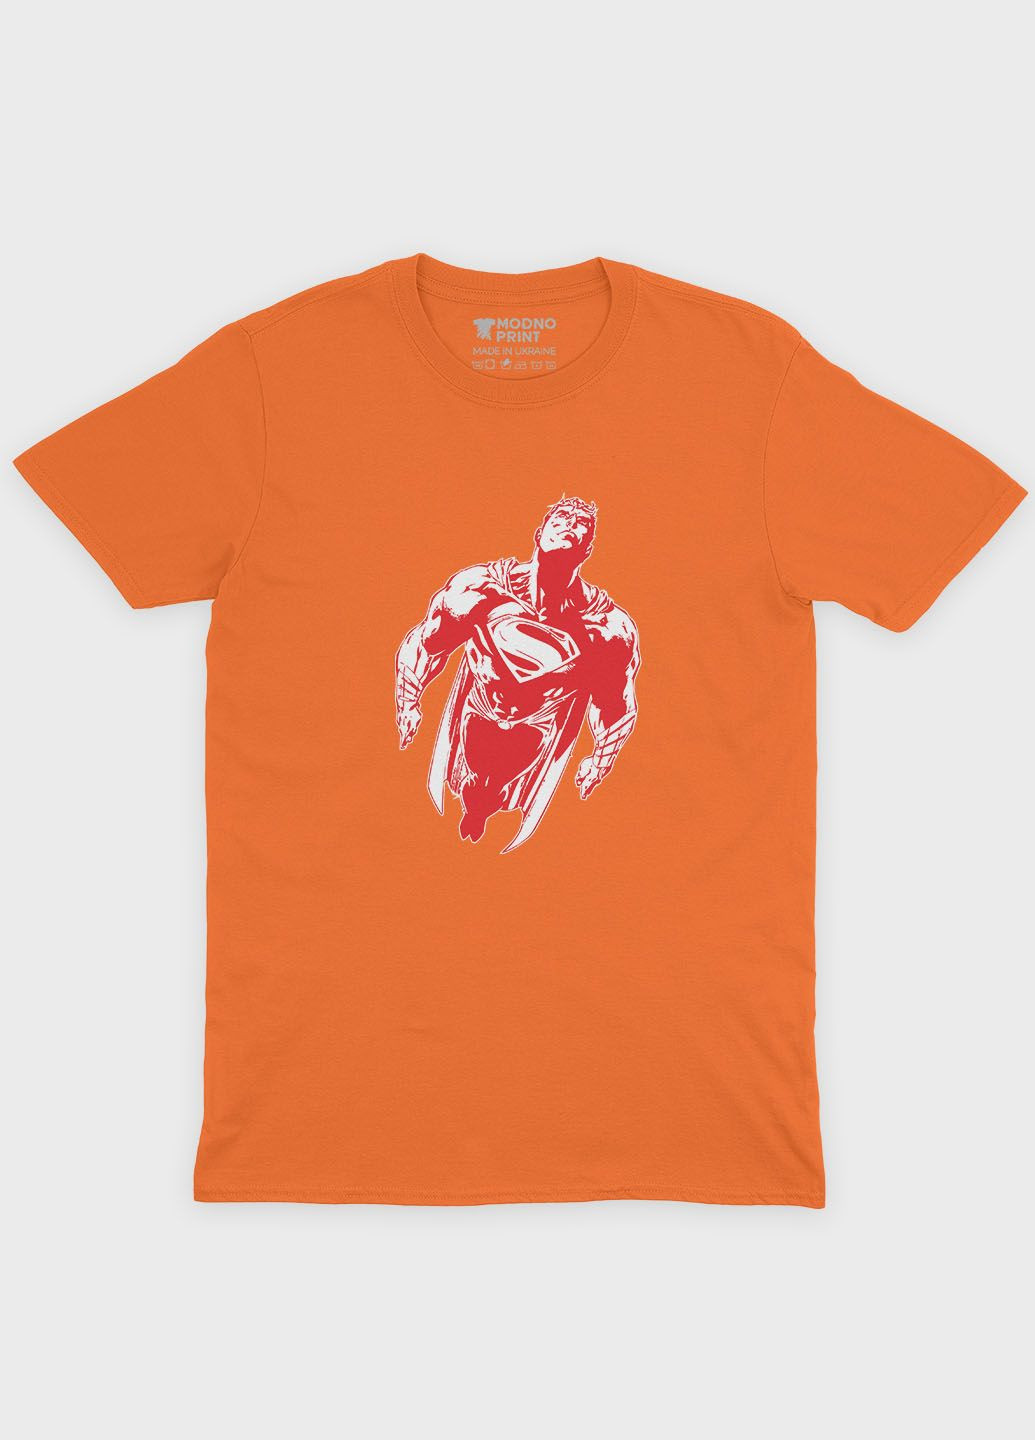 Оранжевая демисезонная футболка для мальчика с принтом супергероя - супермен (ts001-1-ora-006-009-001-b) Modno